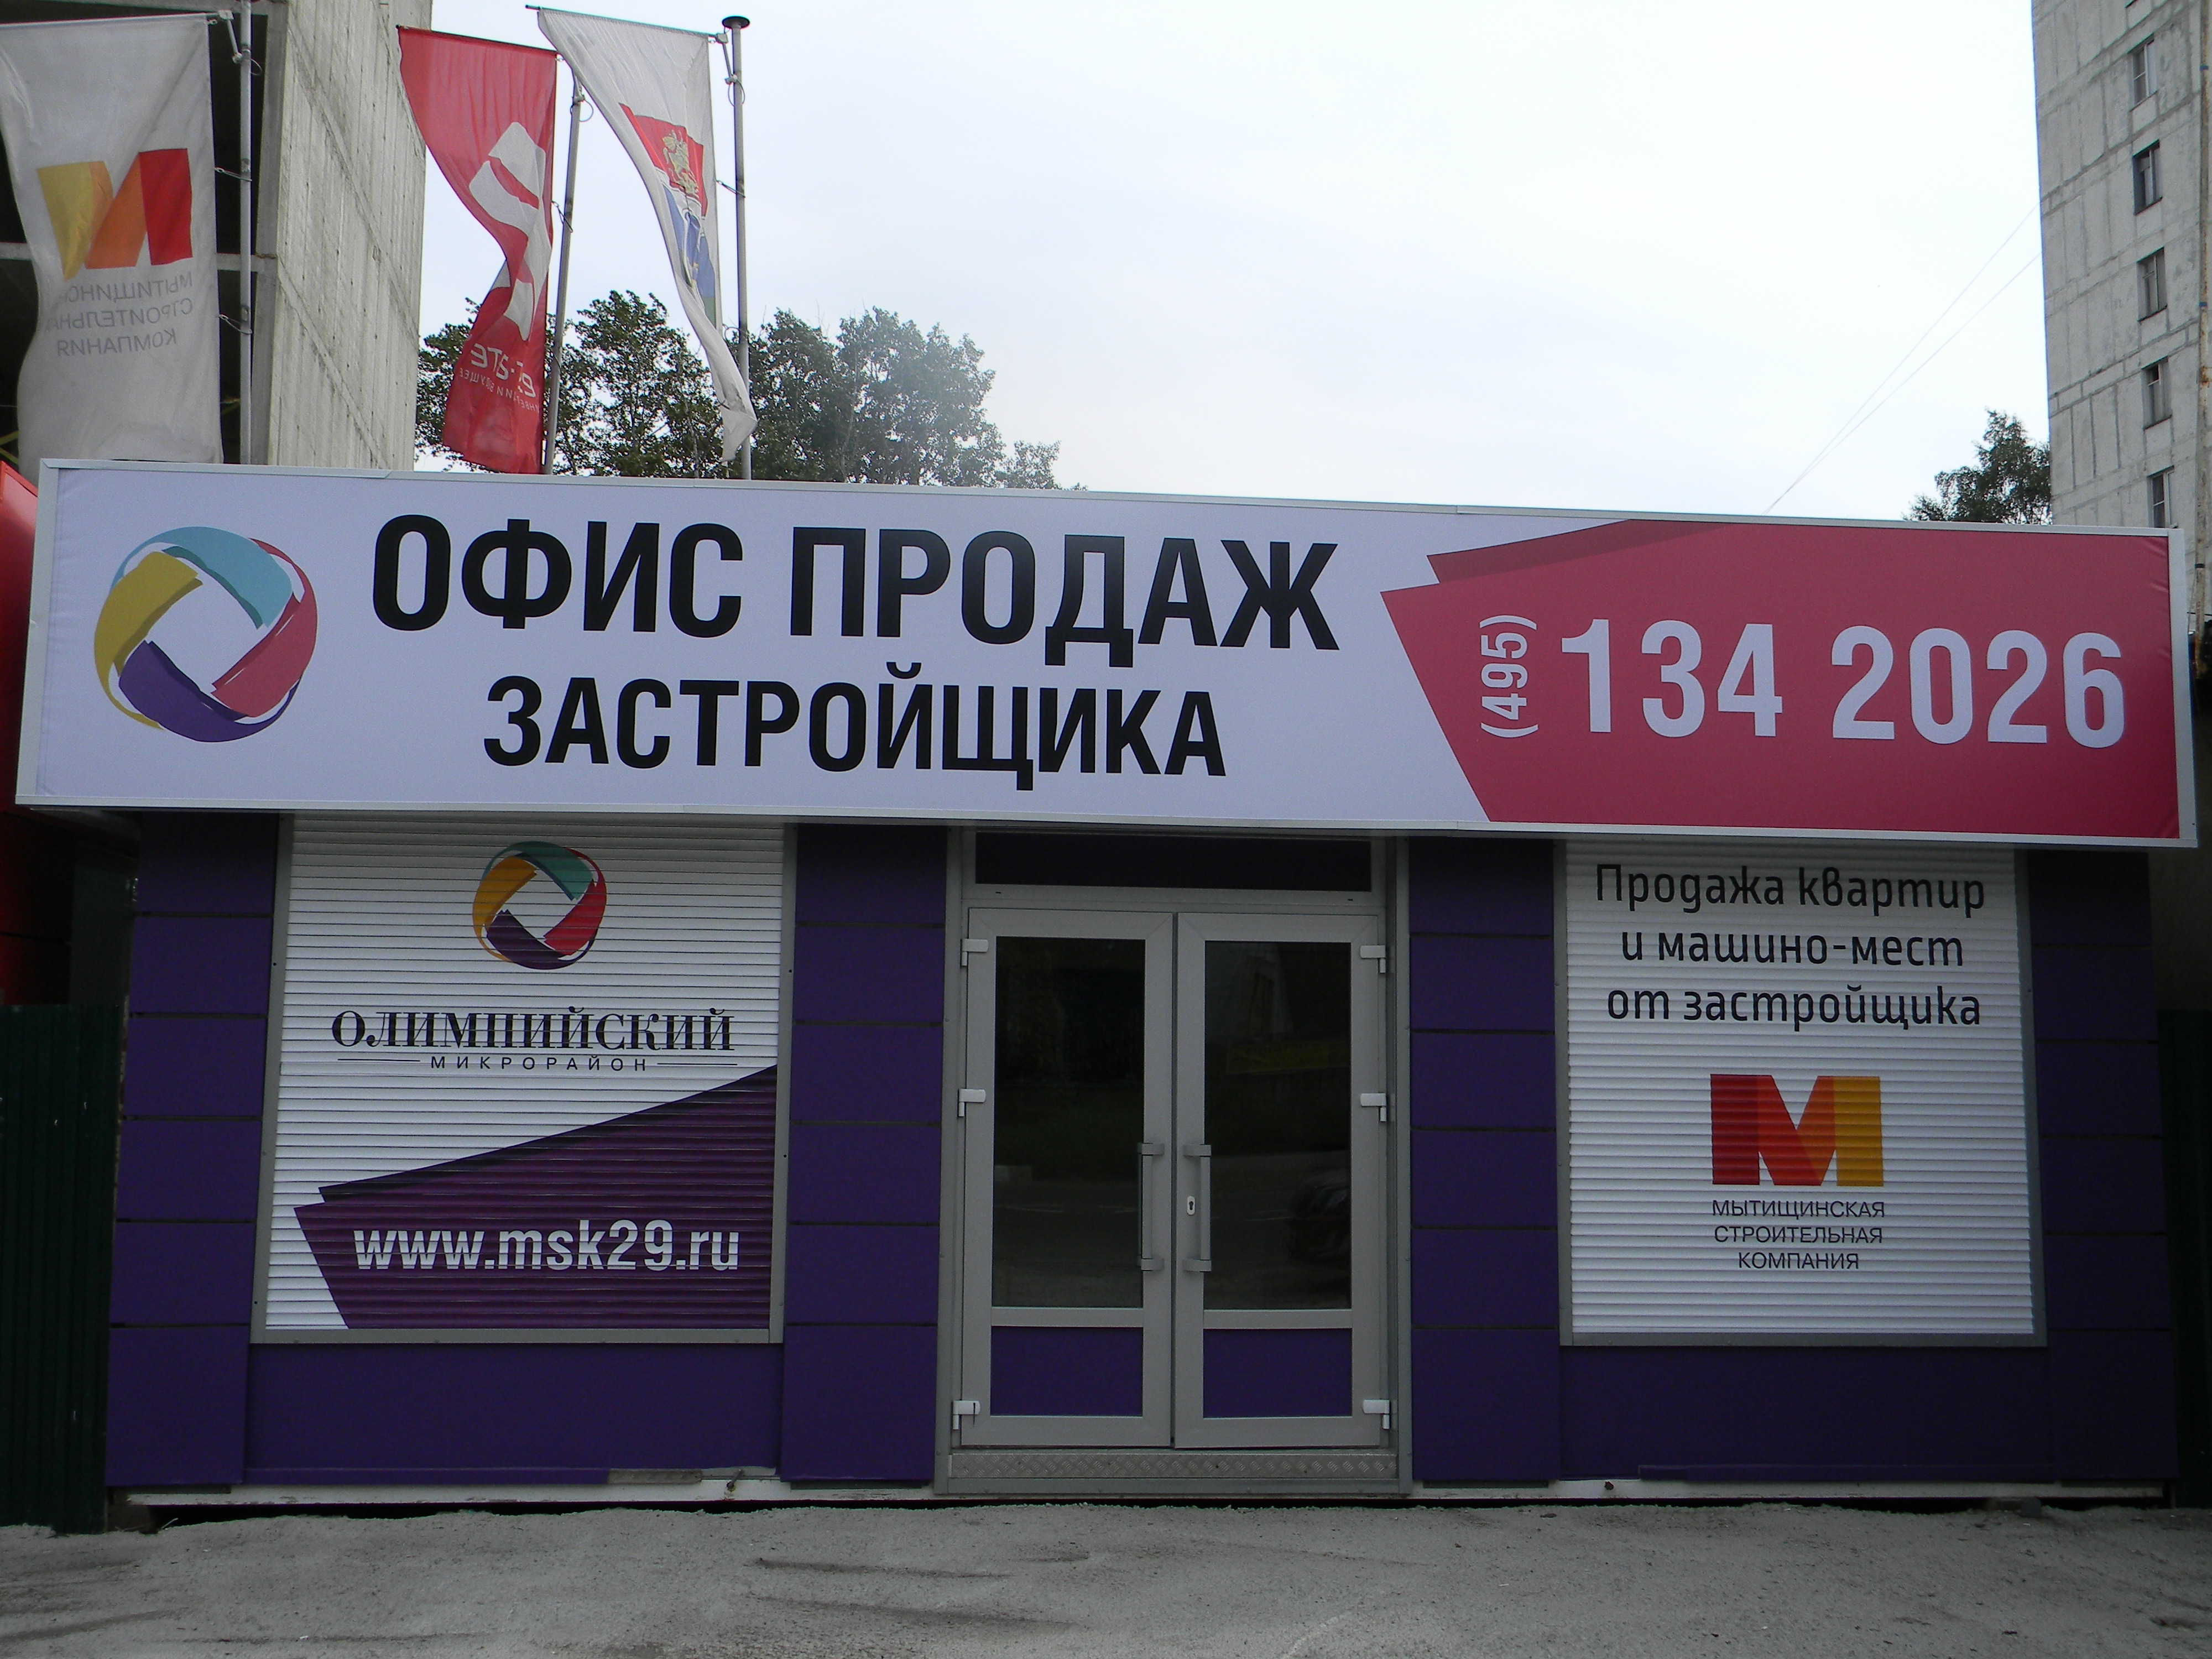 1 сентября — бесплатные ипотечные консультации от банка-партнера «Сбербанк России» в офисе продаж застройщика!